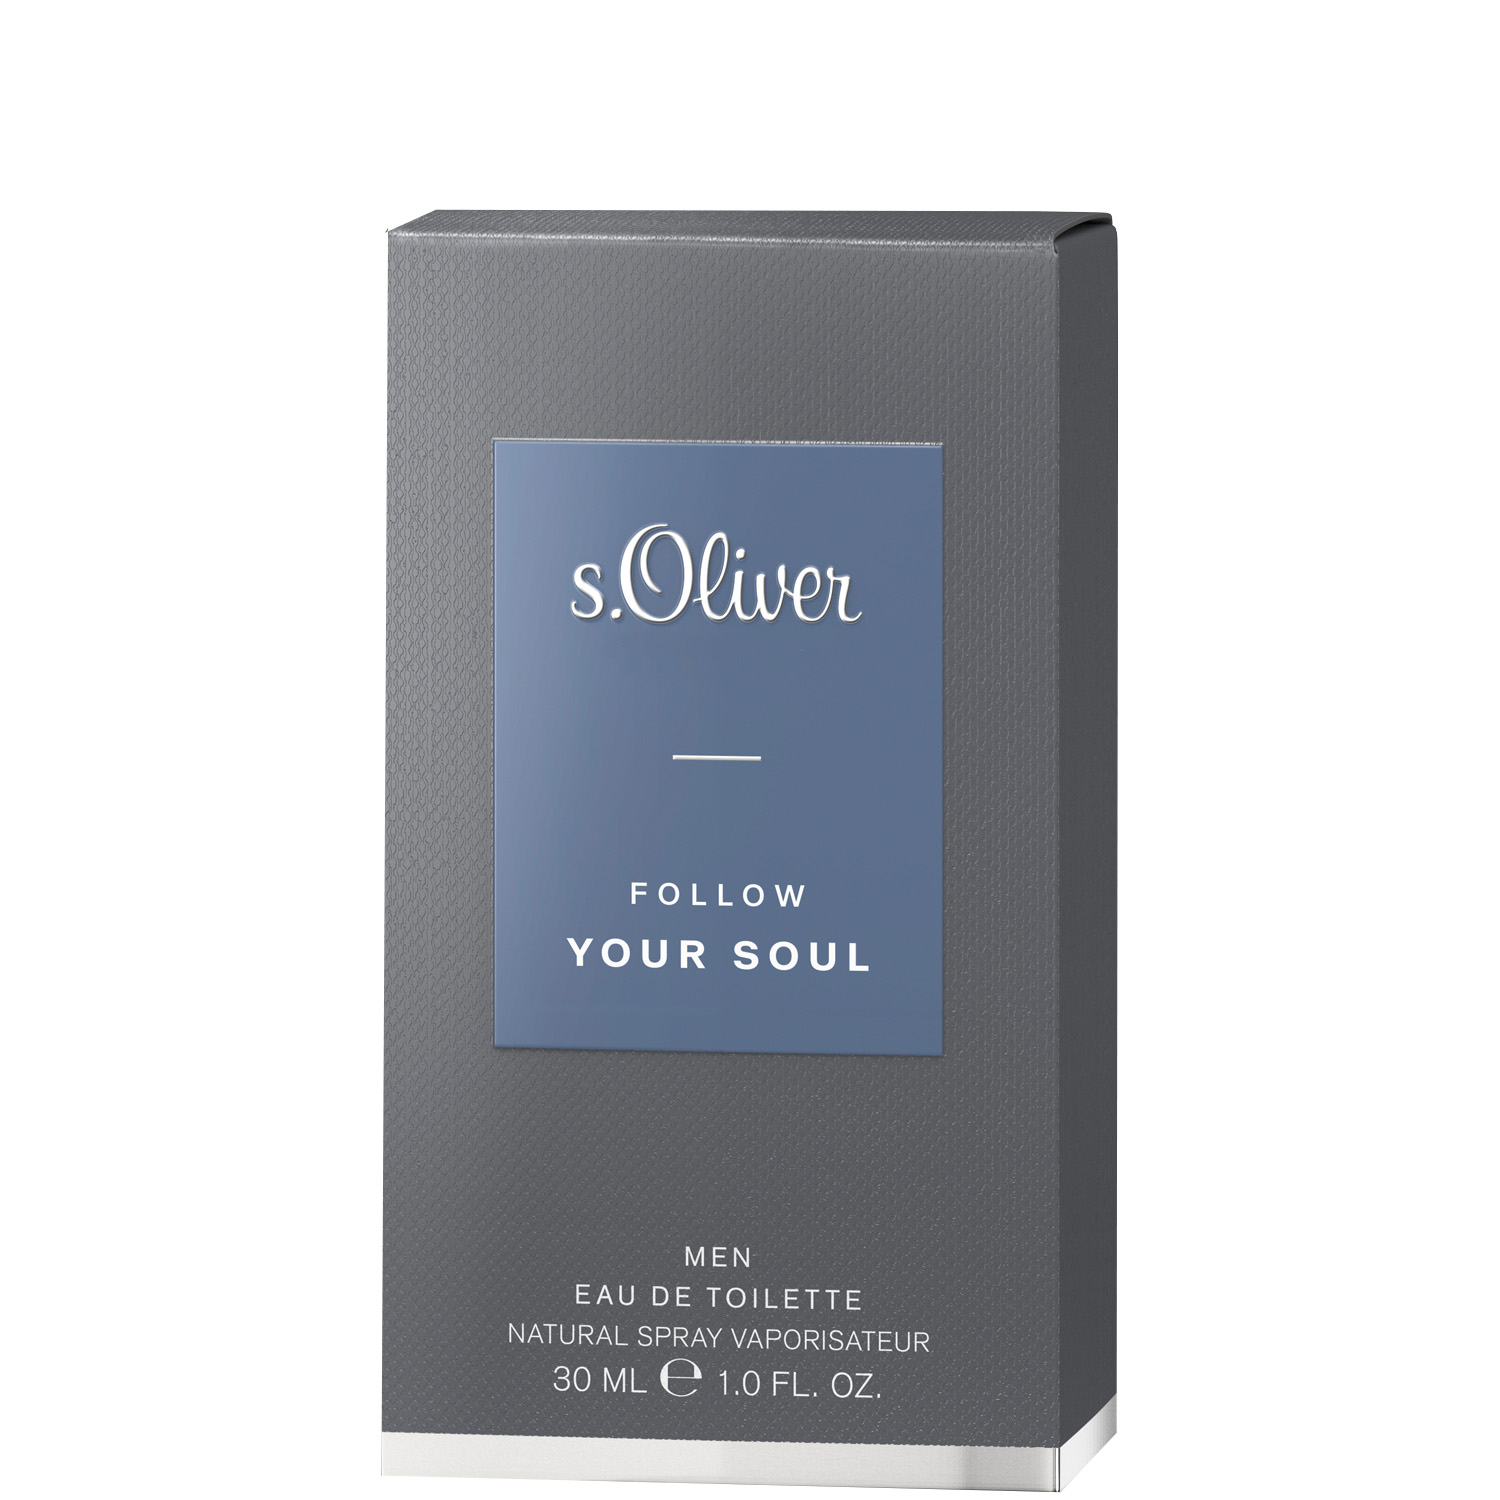 S.Oliver Follow Your Soul Men Eau de Toilette 30ml